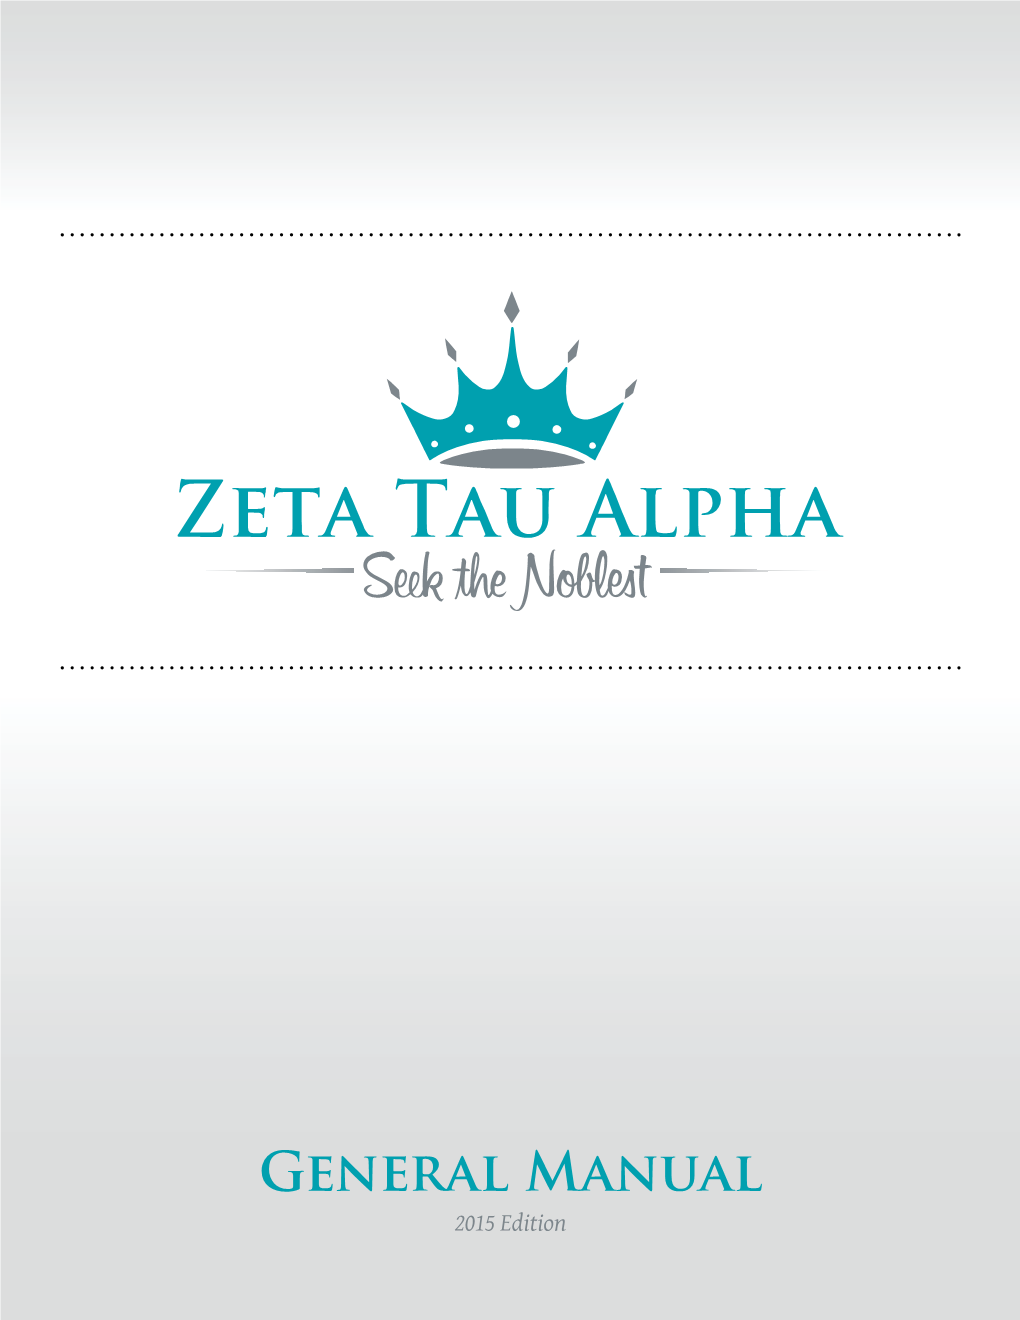 Zeta Tau Alpha General Manual